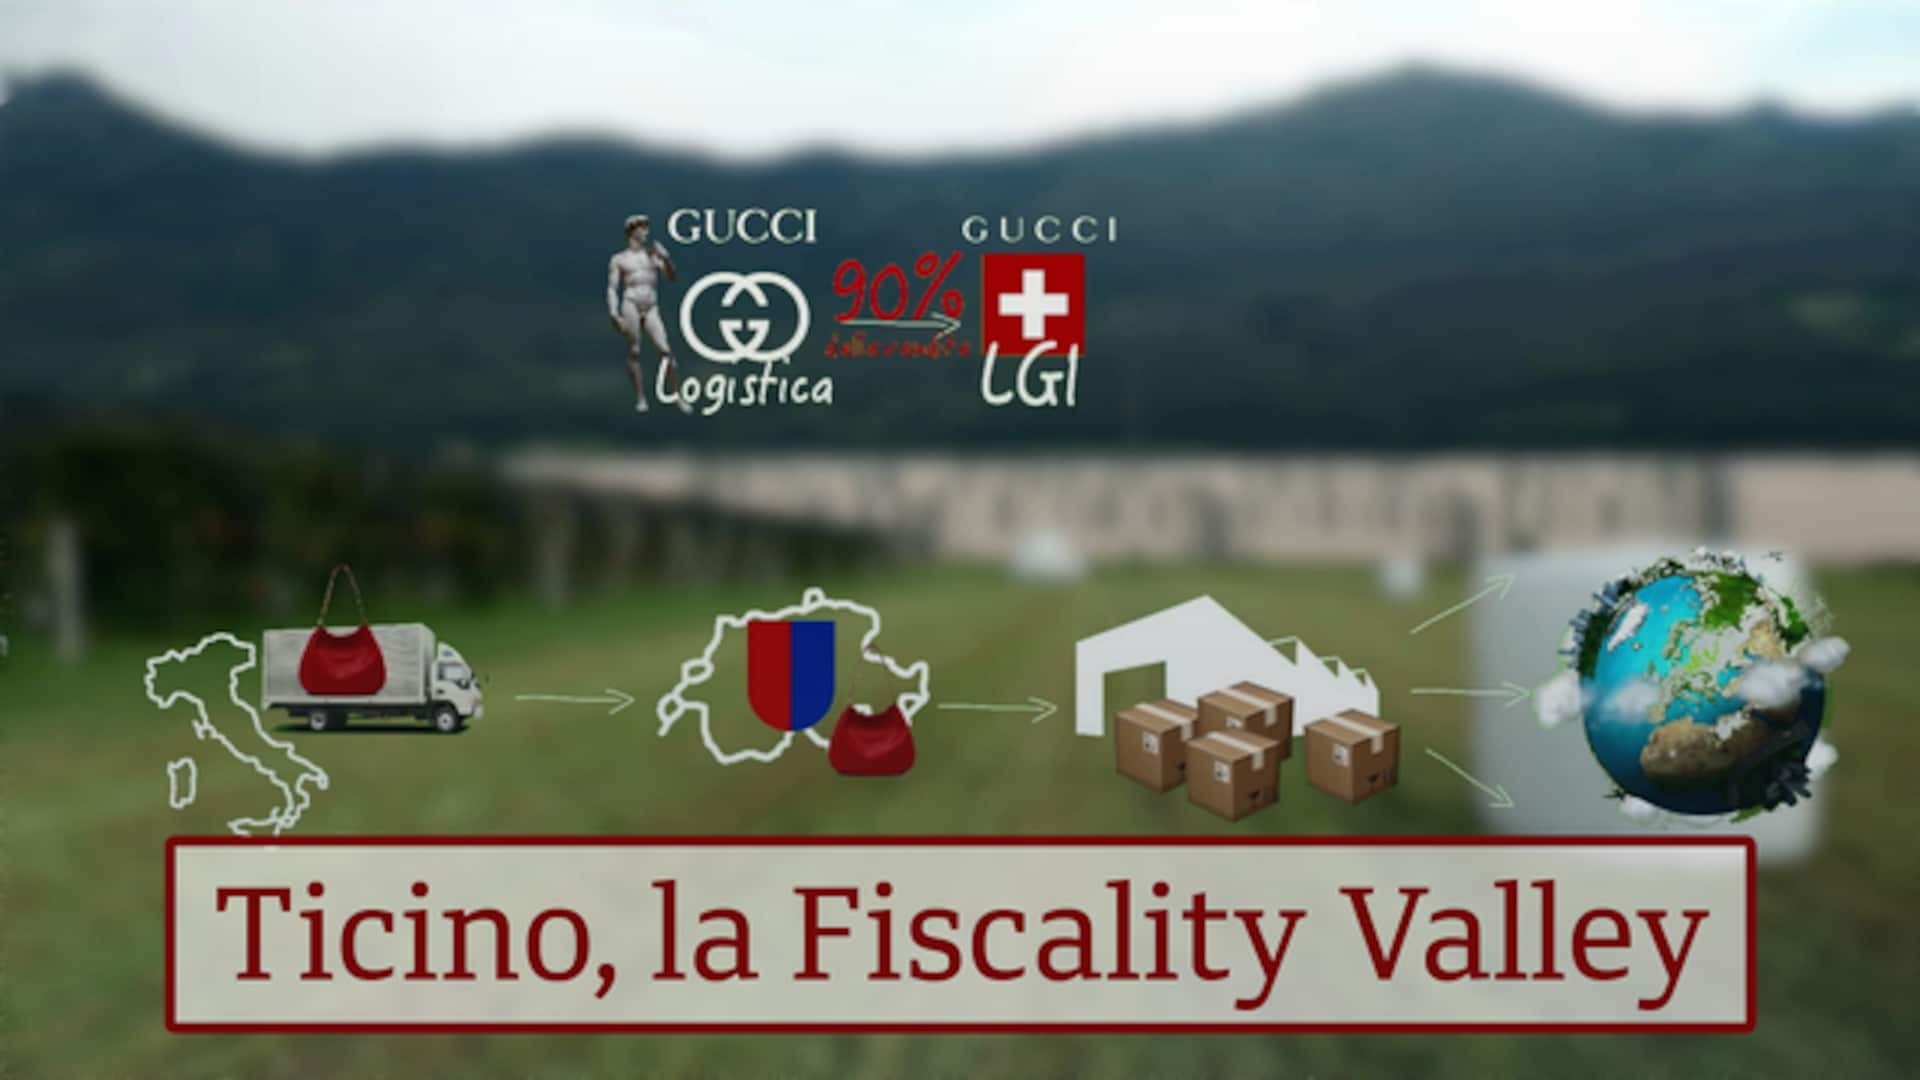 Ticino, la Fiscality Valley